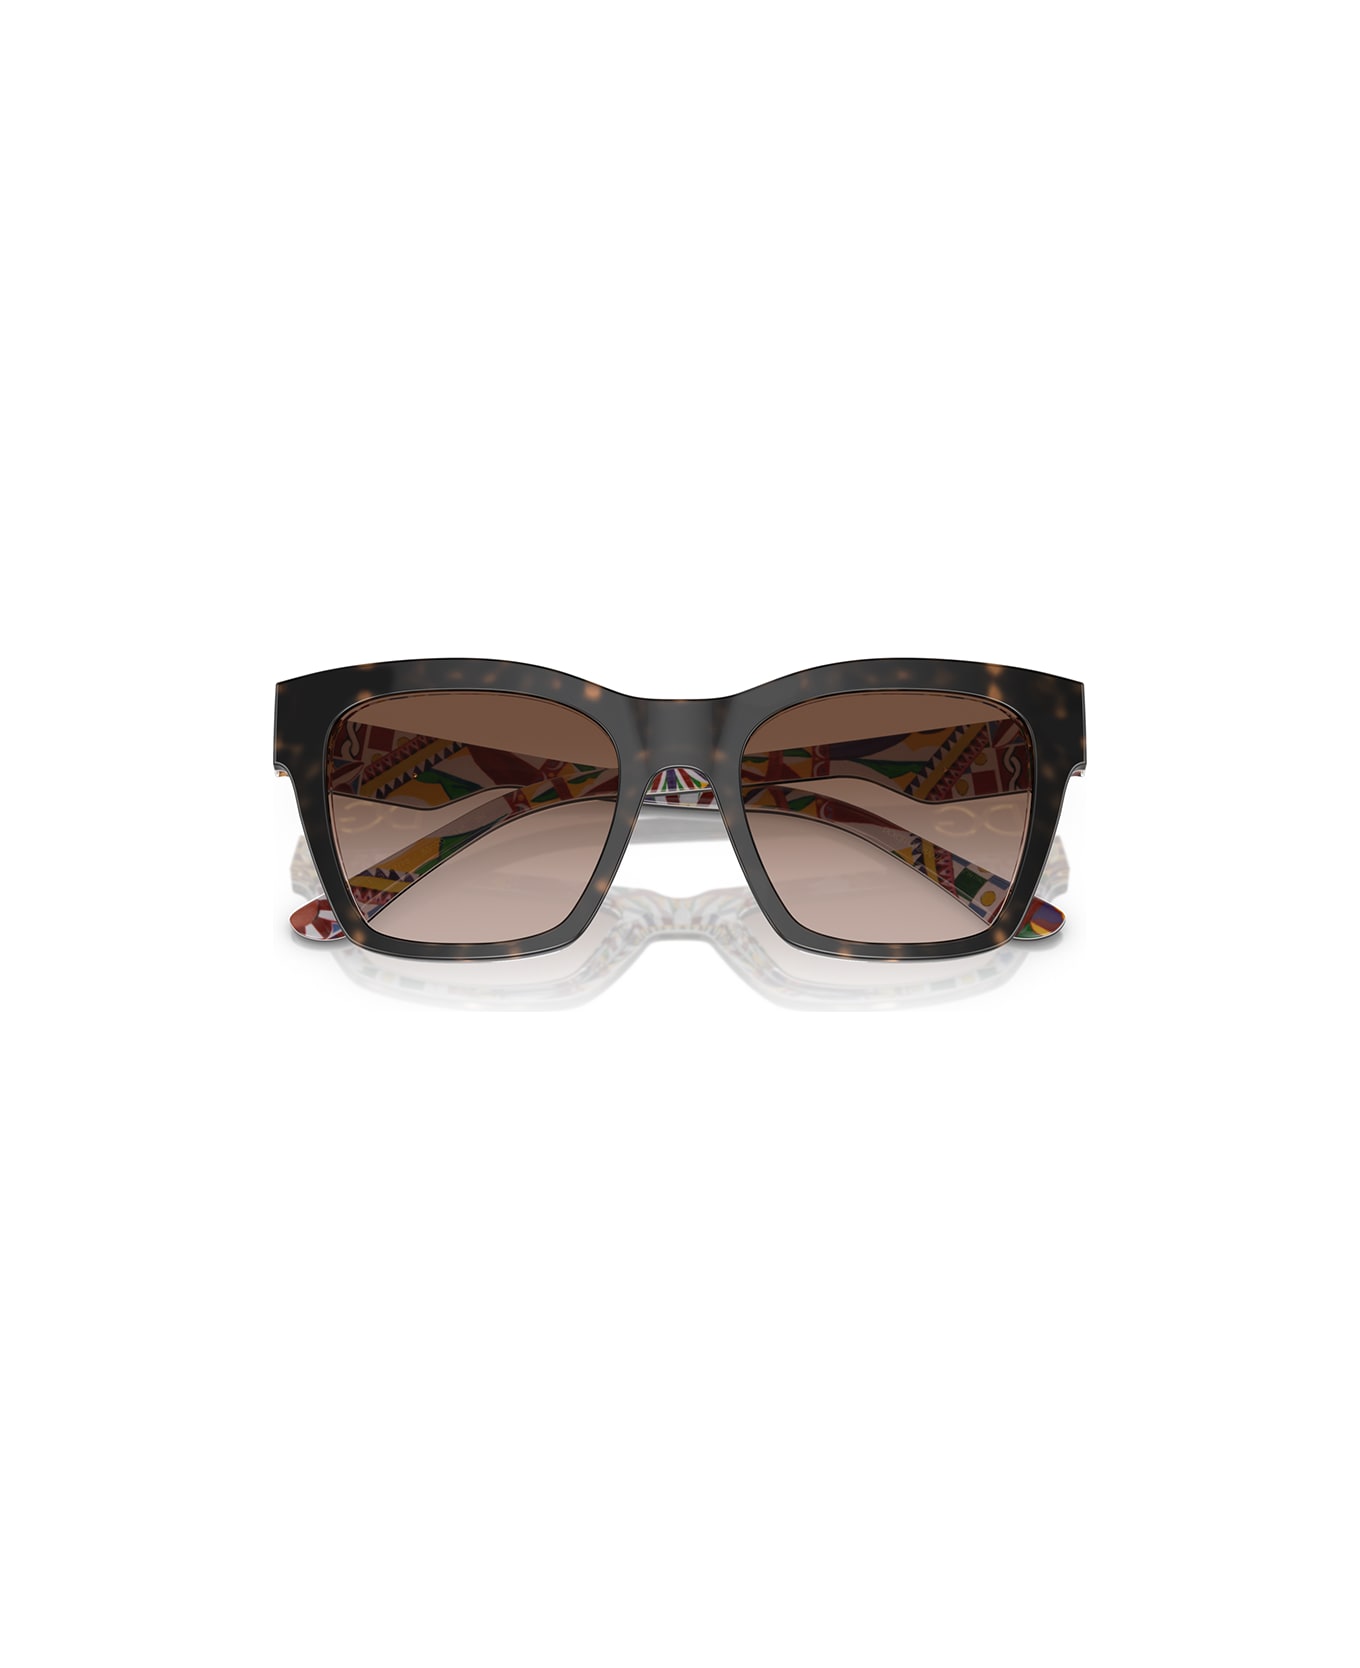 Dolce & Gabbana Eyewear Eyewear - Havana/Marrone sfumato